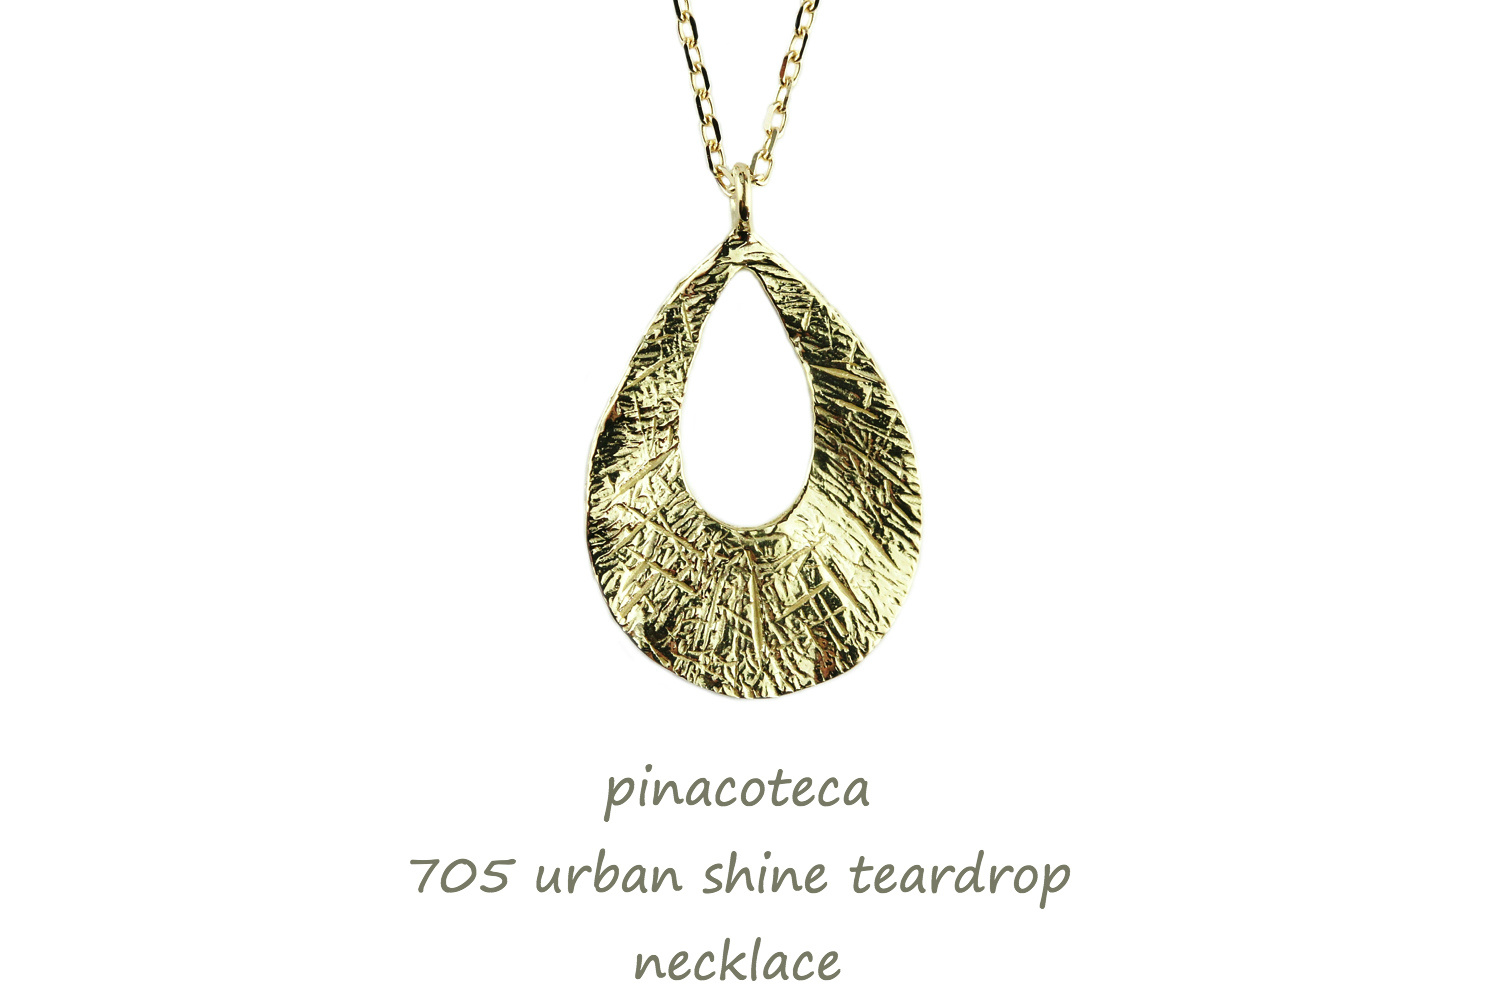 ピナコテーカ 705 アーバン シャイン ティアドロップ 華奢 ネックレス 18金,pinacoteca Urban Shine Teardrop Necklace K18